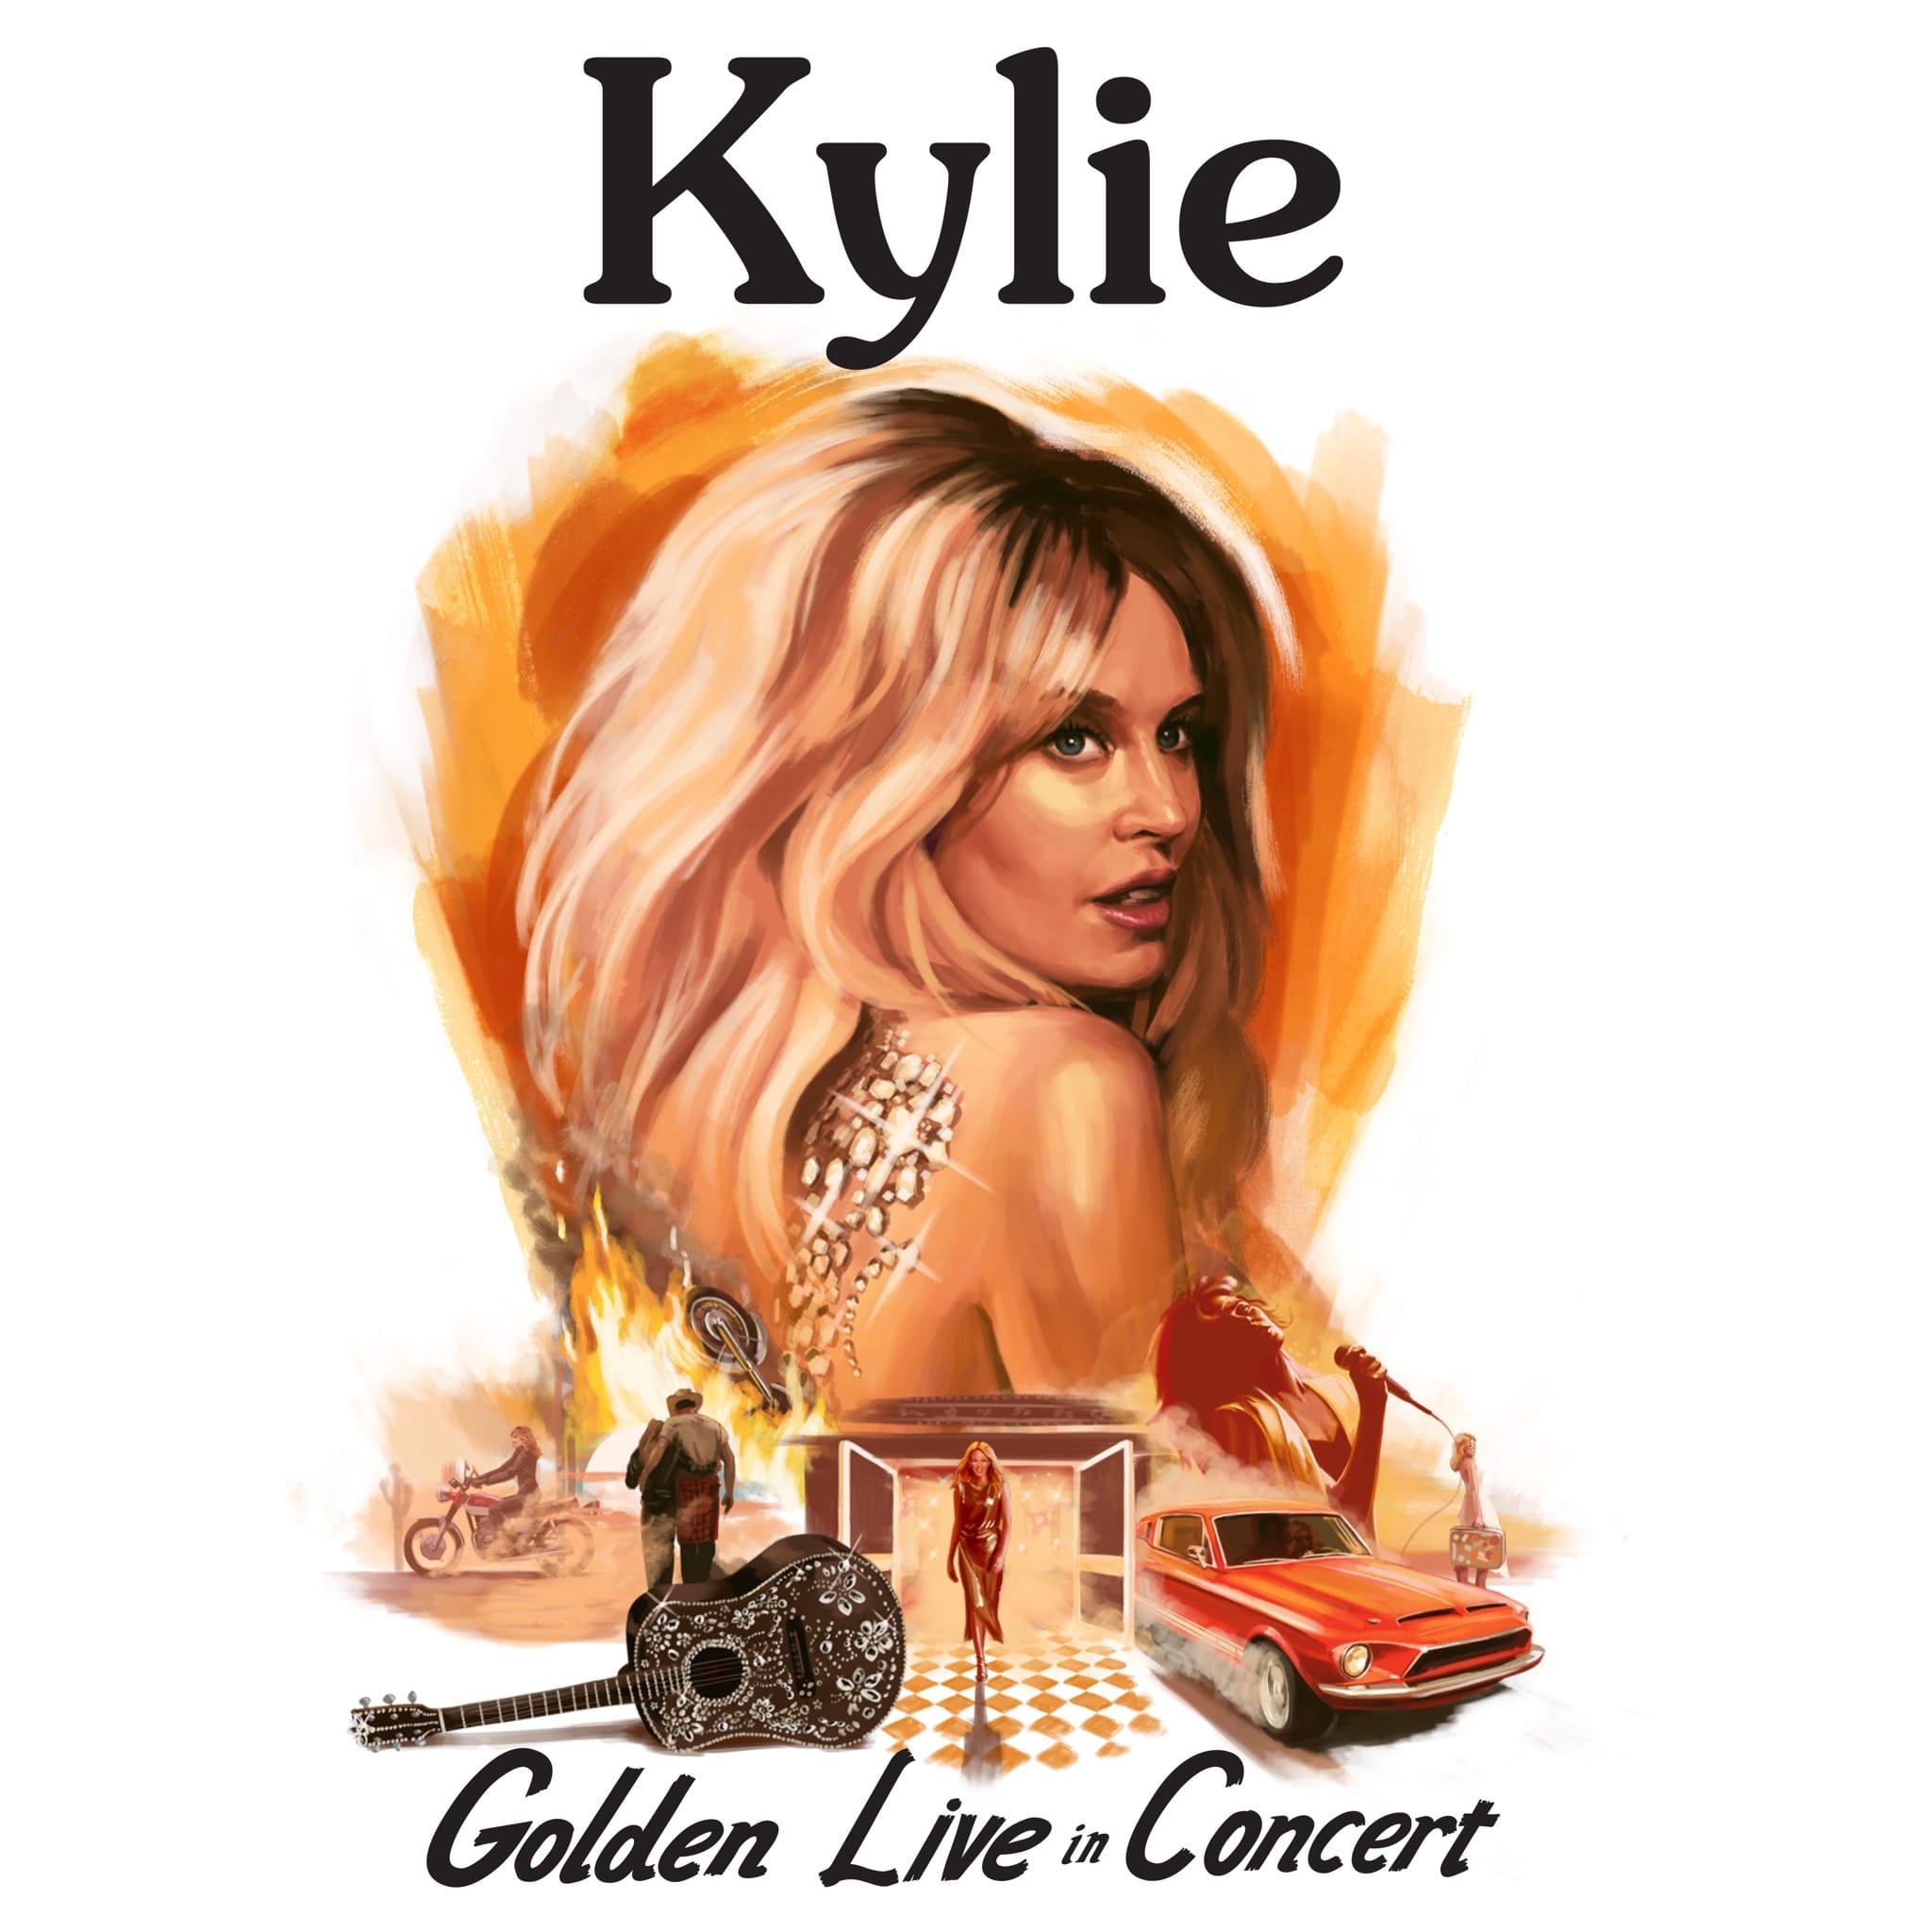 Kylie Minogue image pochette cover album Golden Live in Concert musique